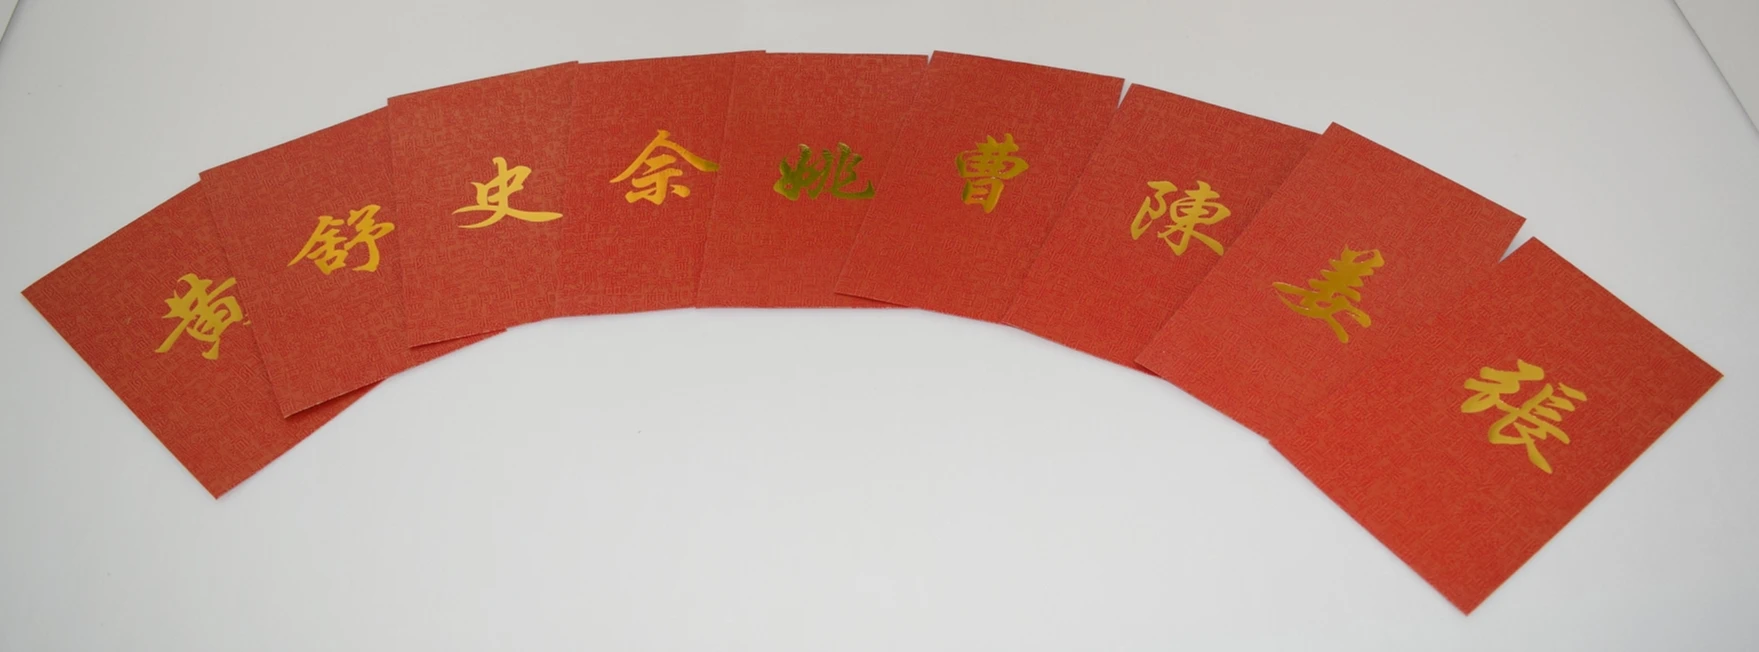 20 шт/1 лот, гонконгские фамилии, красные конверты-пакеты на заказ, фамилия, семейные, китайские, новогодние, свадебные конверты